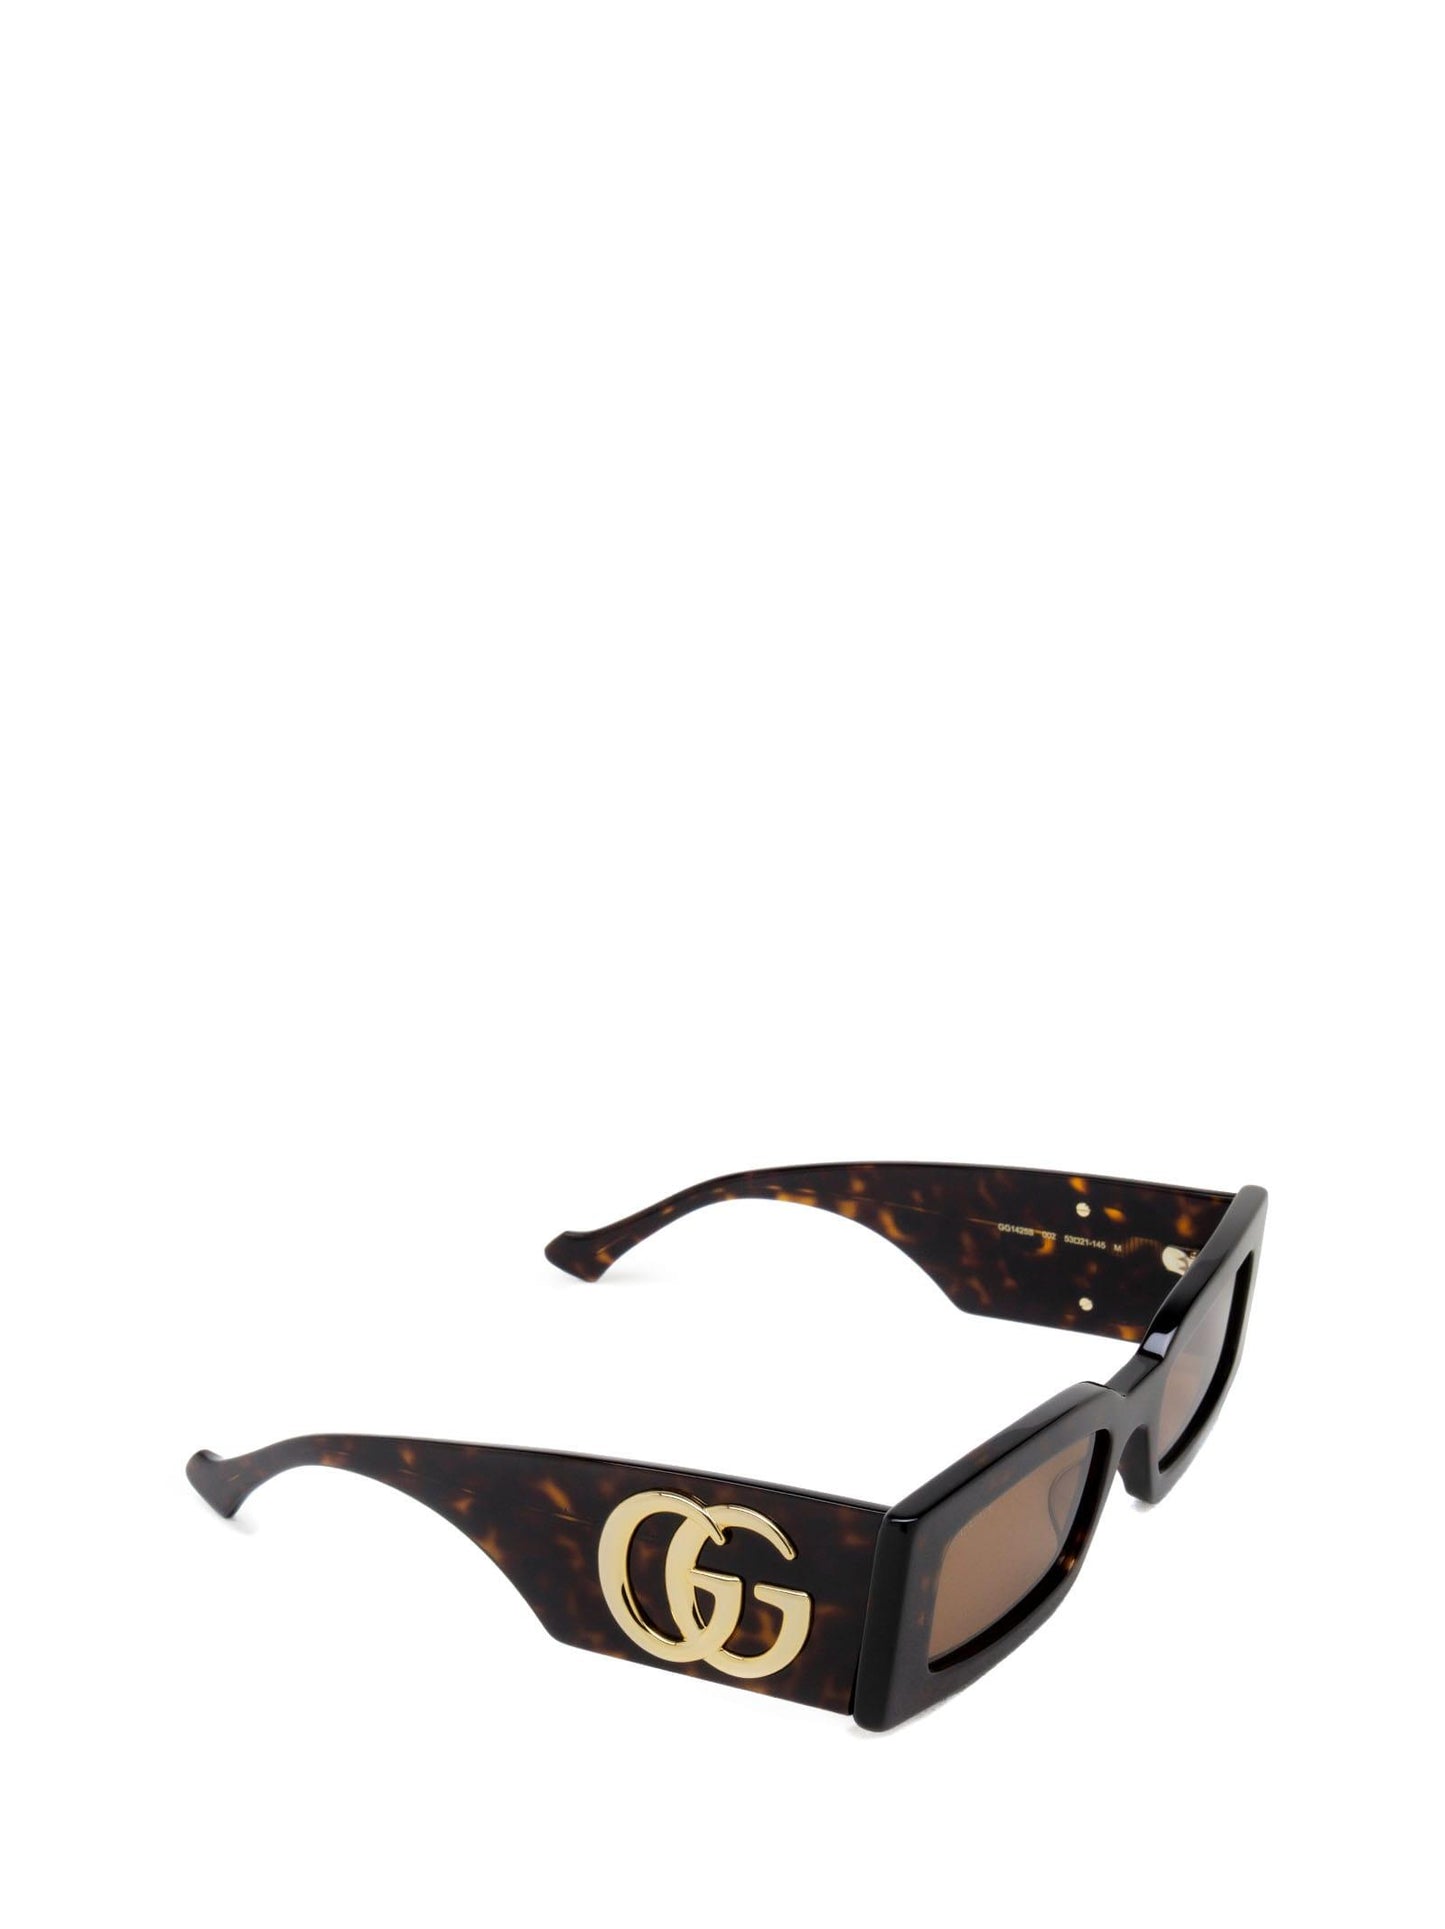 Gucci GG1425S-002-53 53mm New Sunglasses